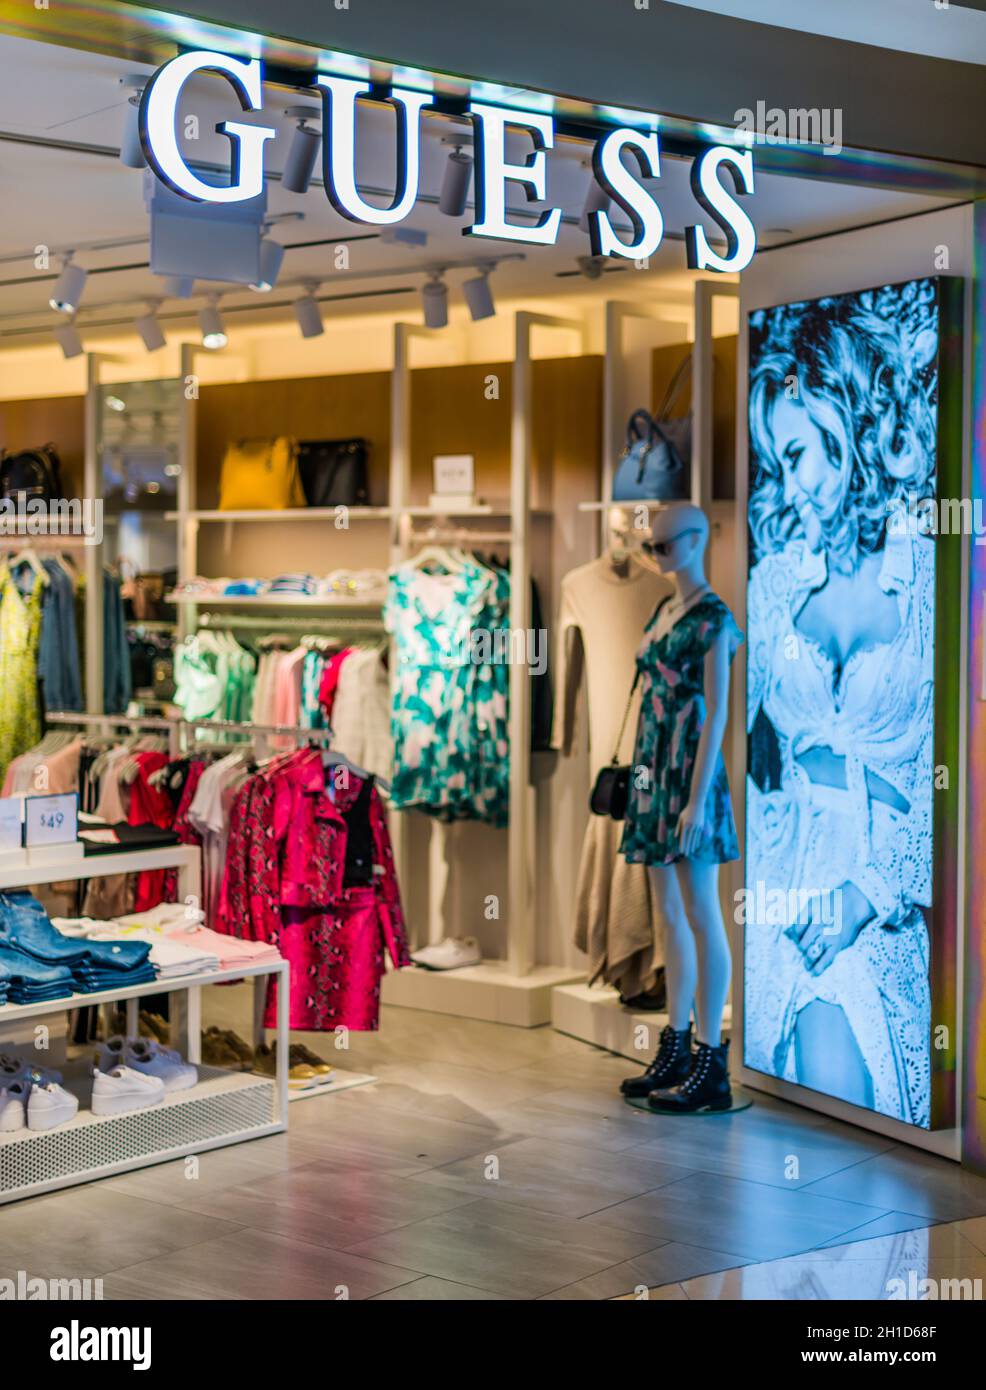 SINGAPUR - 5. MÄRZ 2020: Vordereingang zum Guess Store im Einkaufszentrum von Singapur Stockfoto